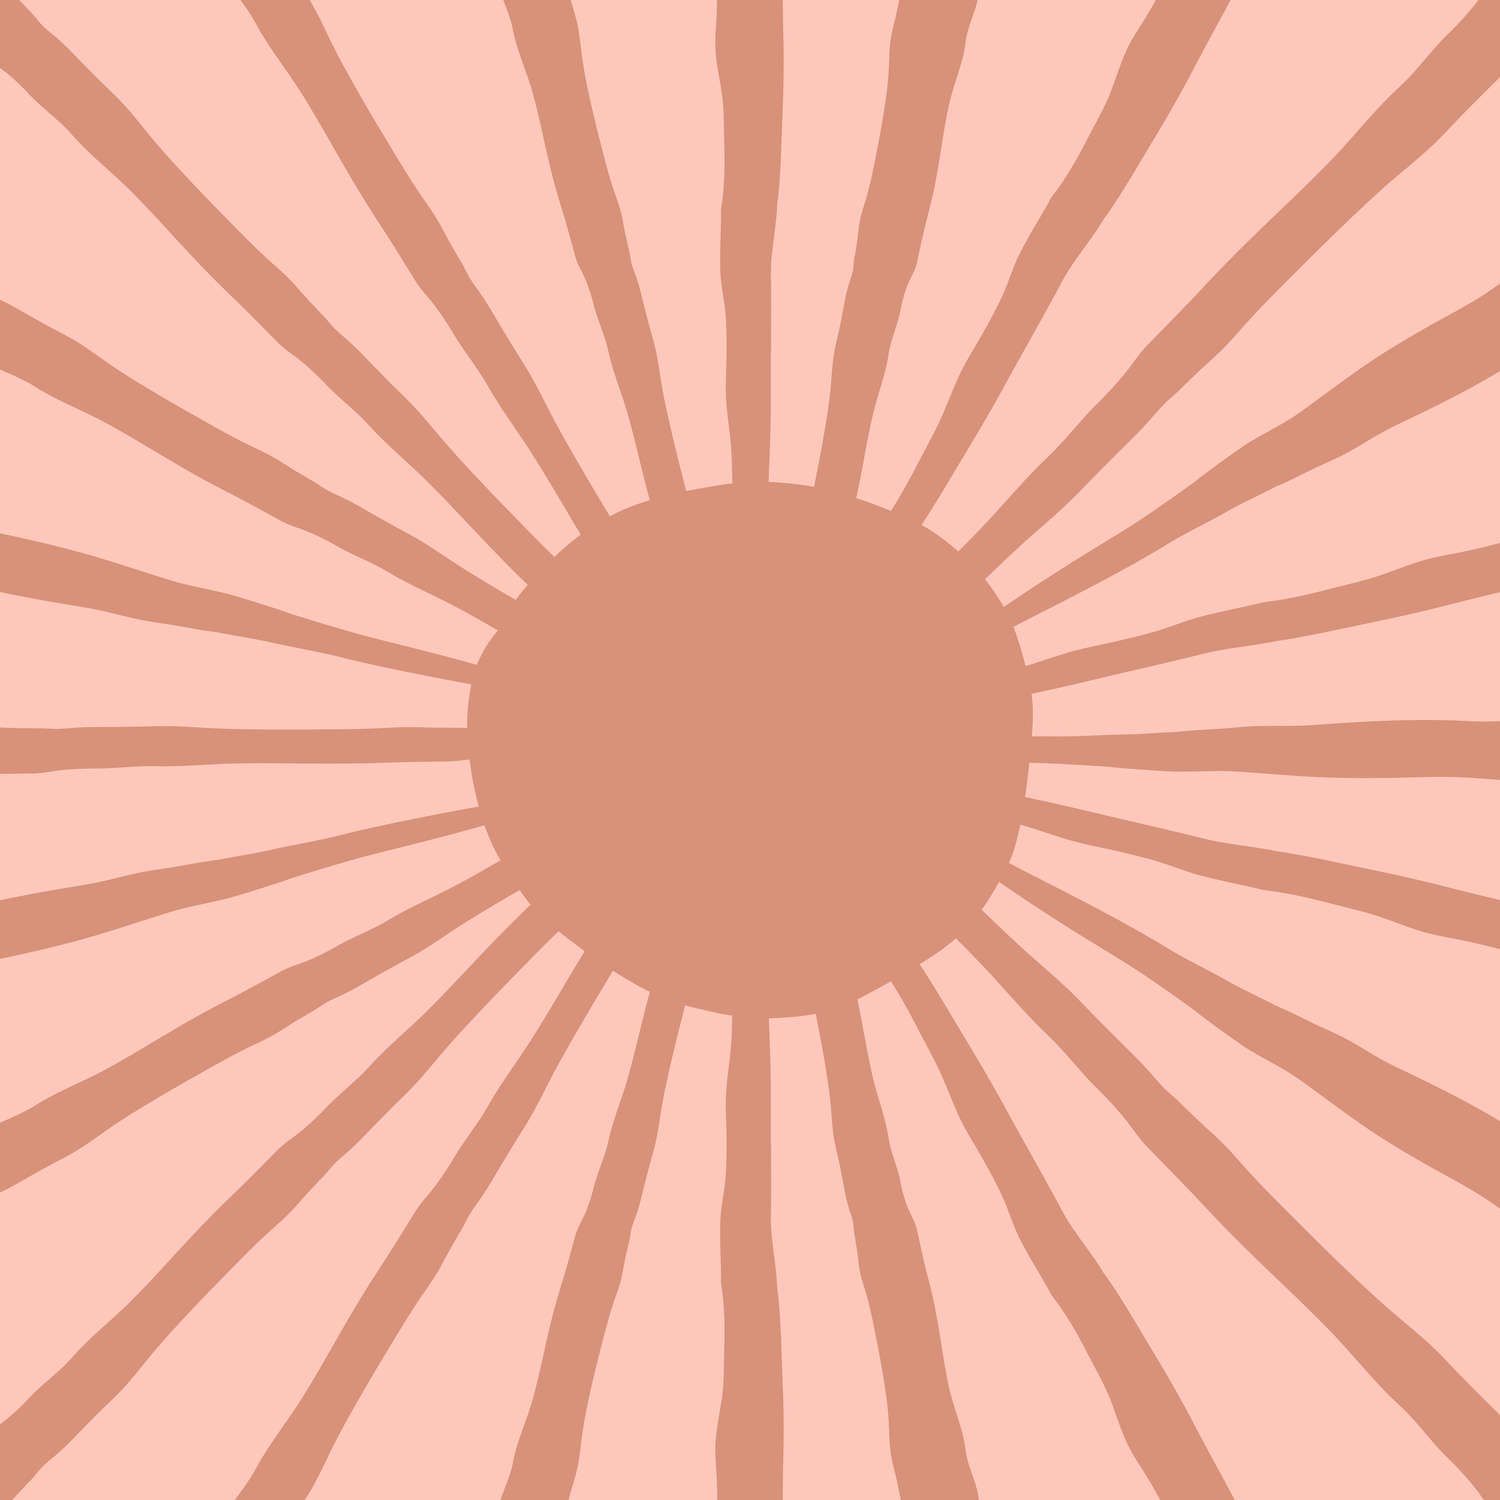             Onderlaag behang met geverfde abstracte zon - glad & mat vlies
        